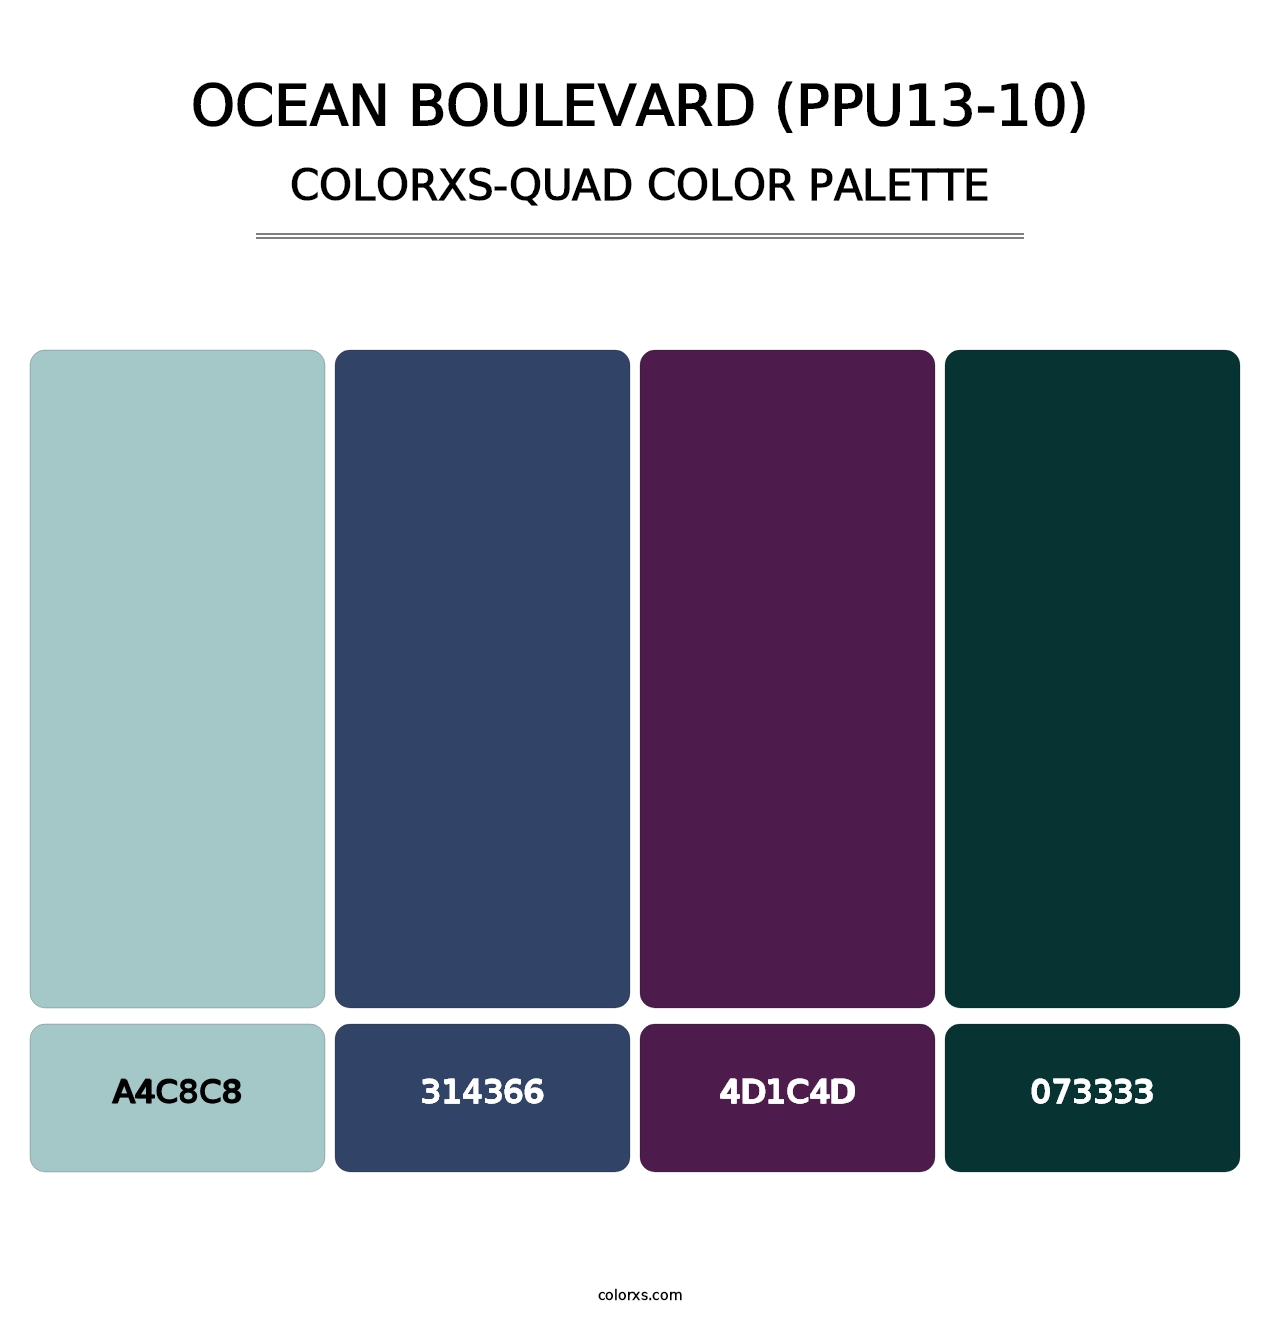 Ocean Boulevard (PPU13-10) - Colorxs Quad Palette